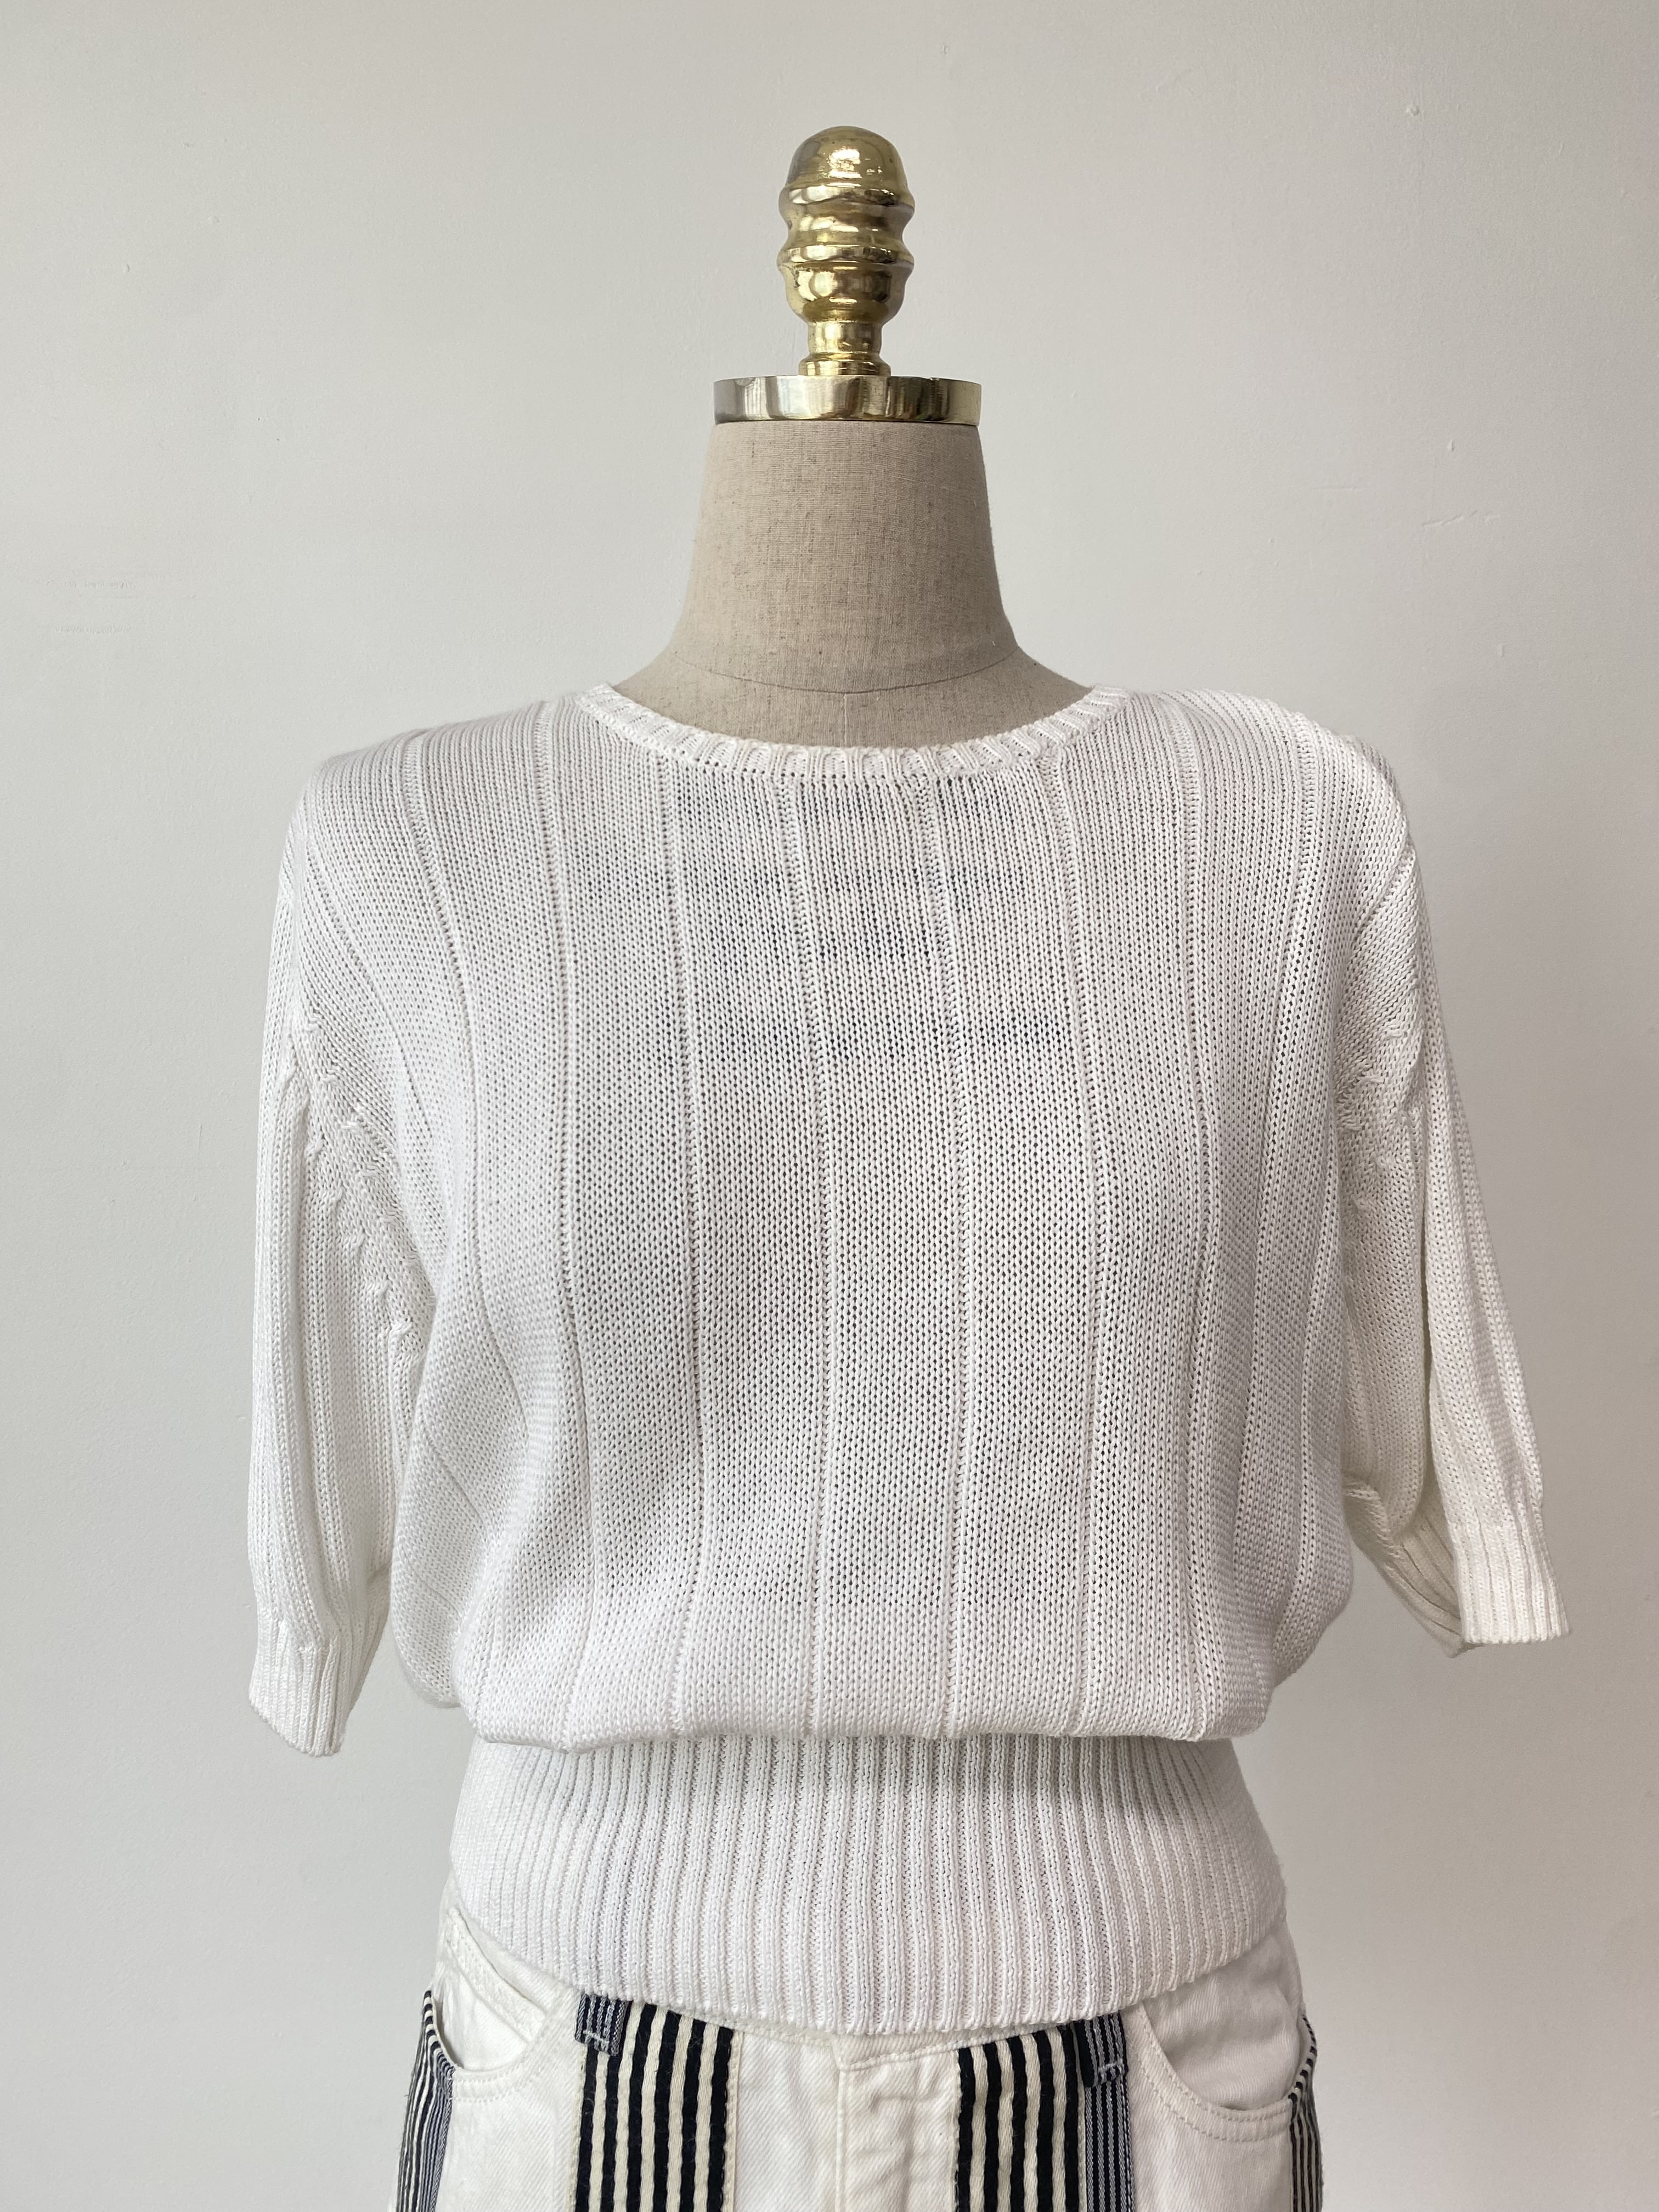 Ungaro white knit top